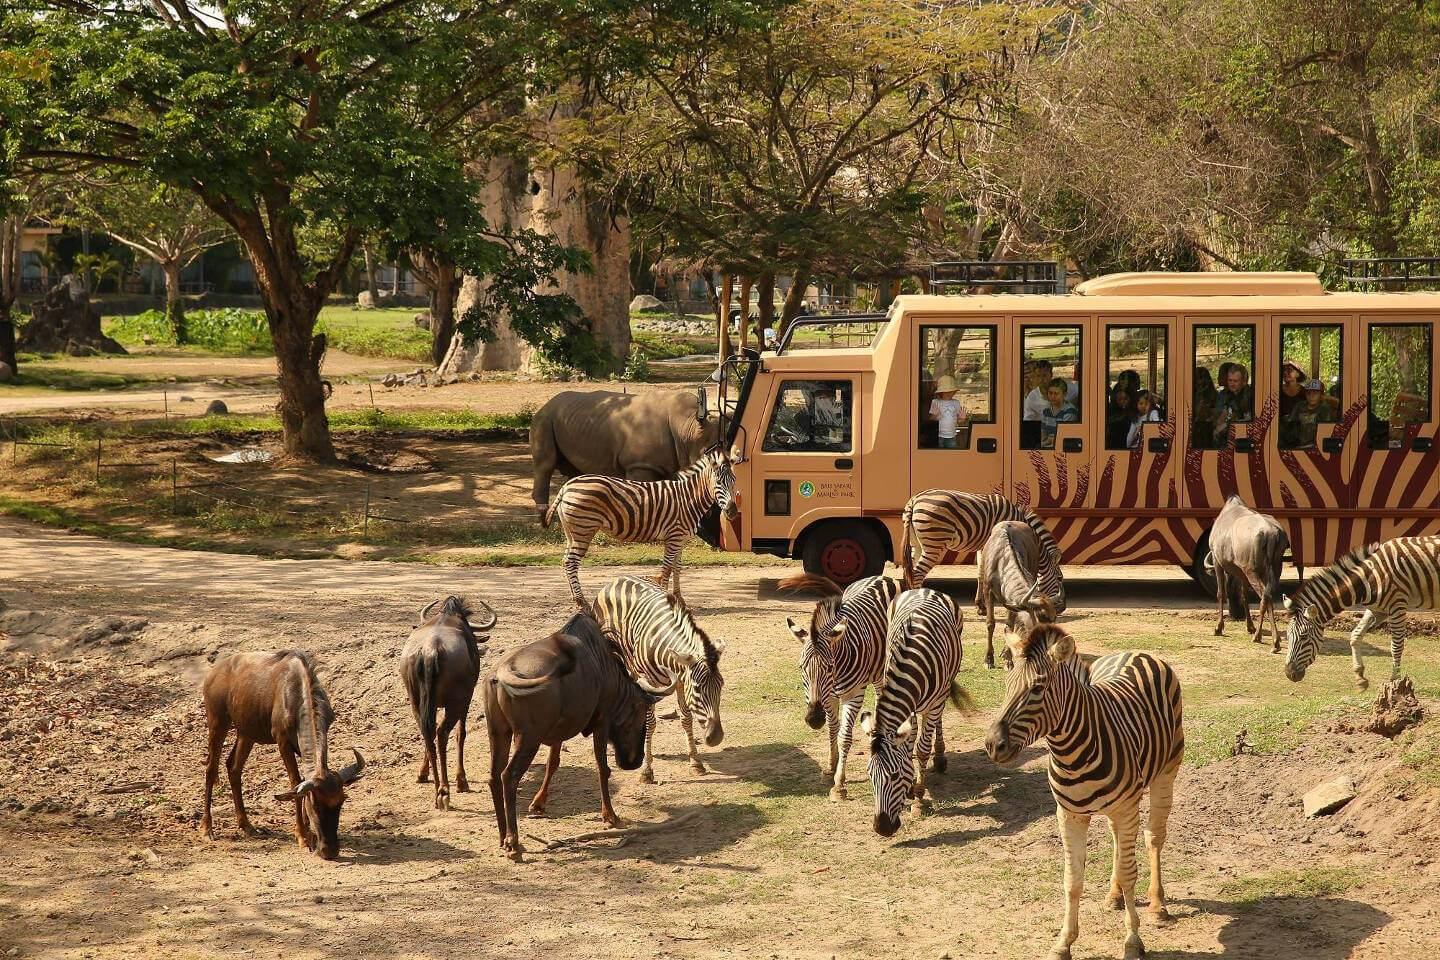 [LapakTrip] Tiket Masuk Taman Safari Bali - 1 Dewasa - Elephant Ride